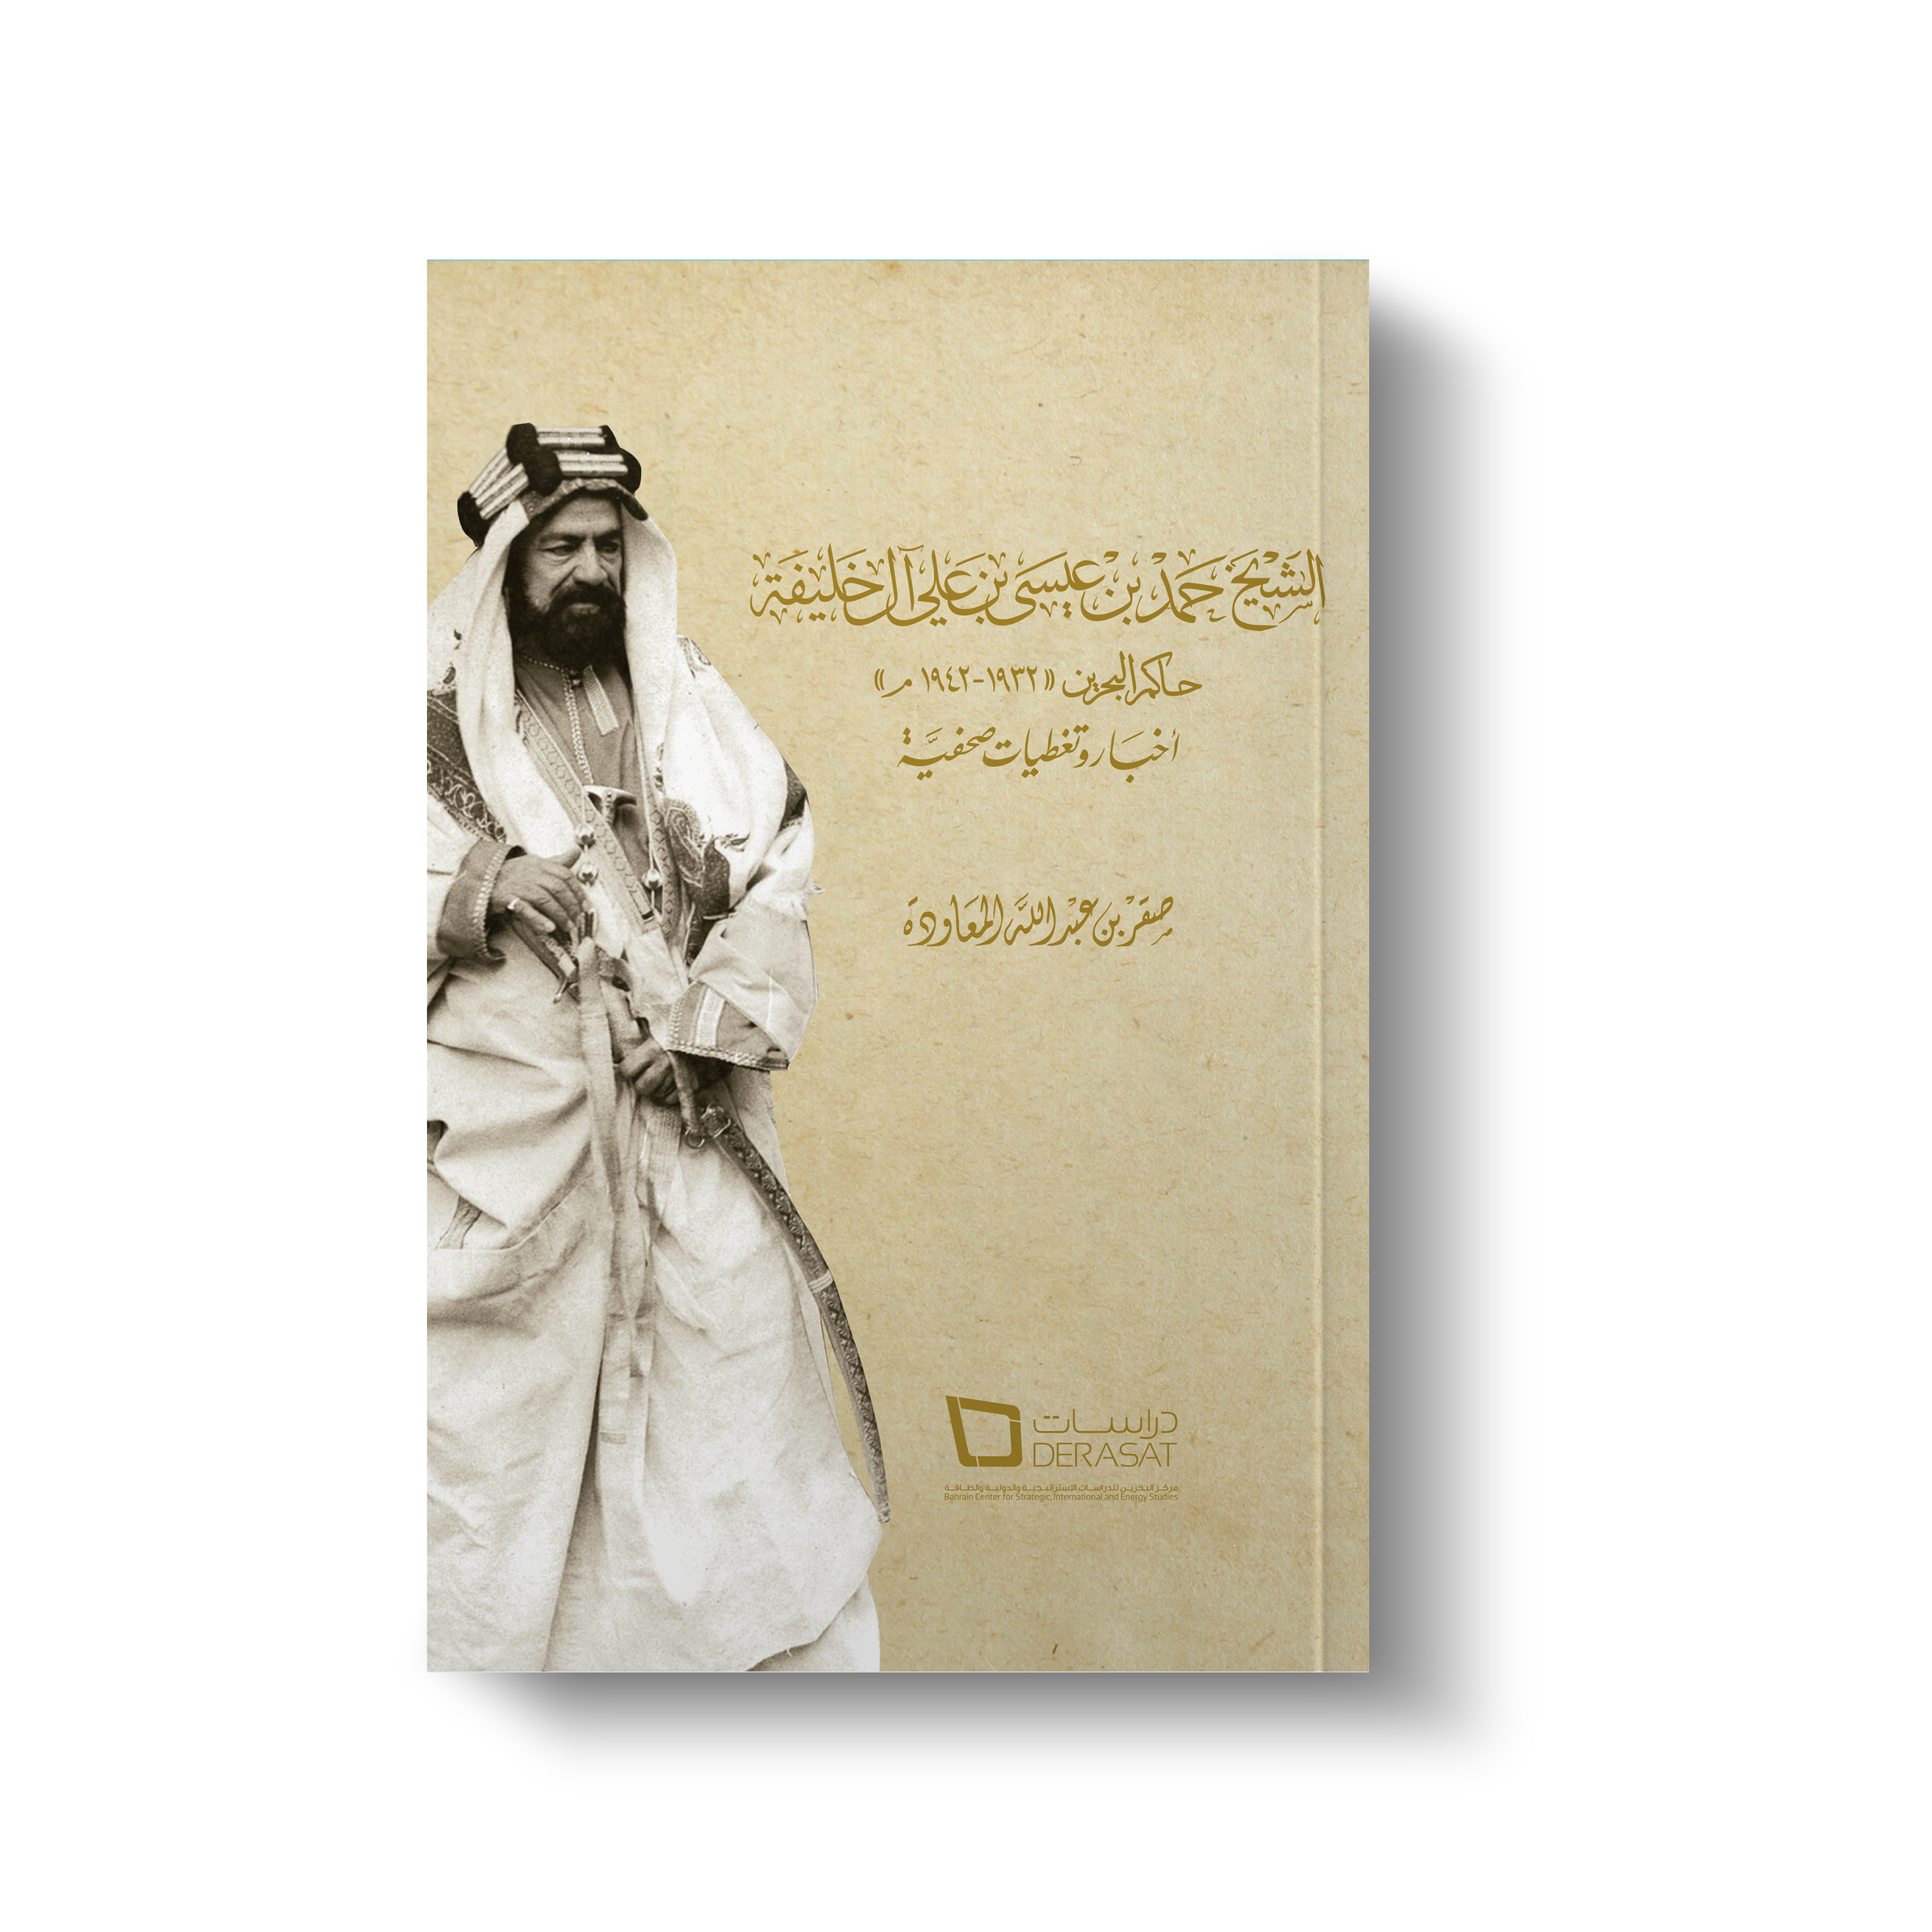 الشيخ حمد بن عيسى بن علي آل خليفة، حاكم البحرين 1932-1942 التغطية الإخبارية والصحفية